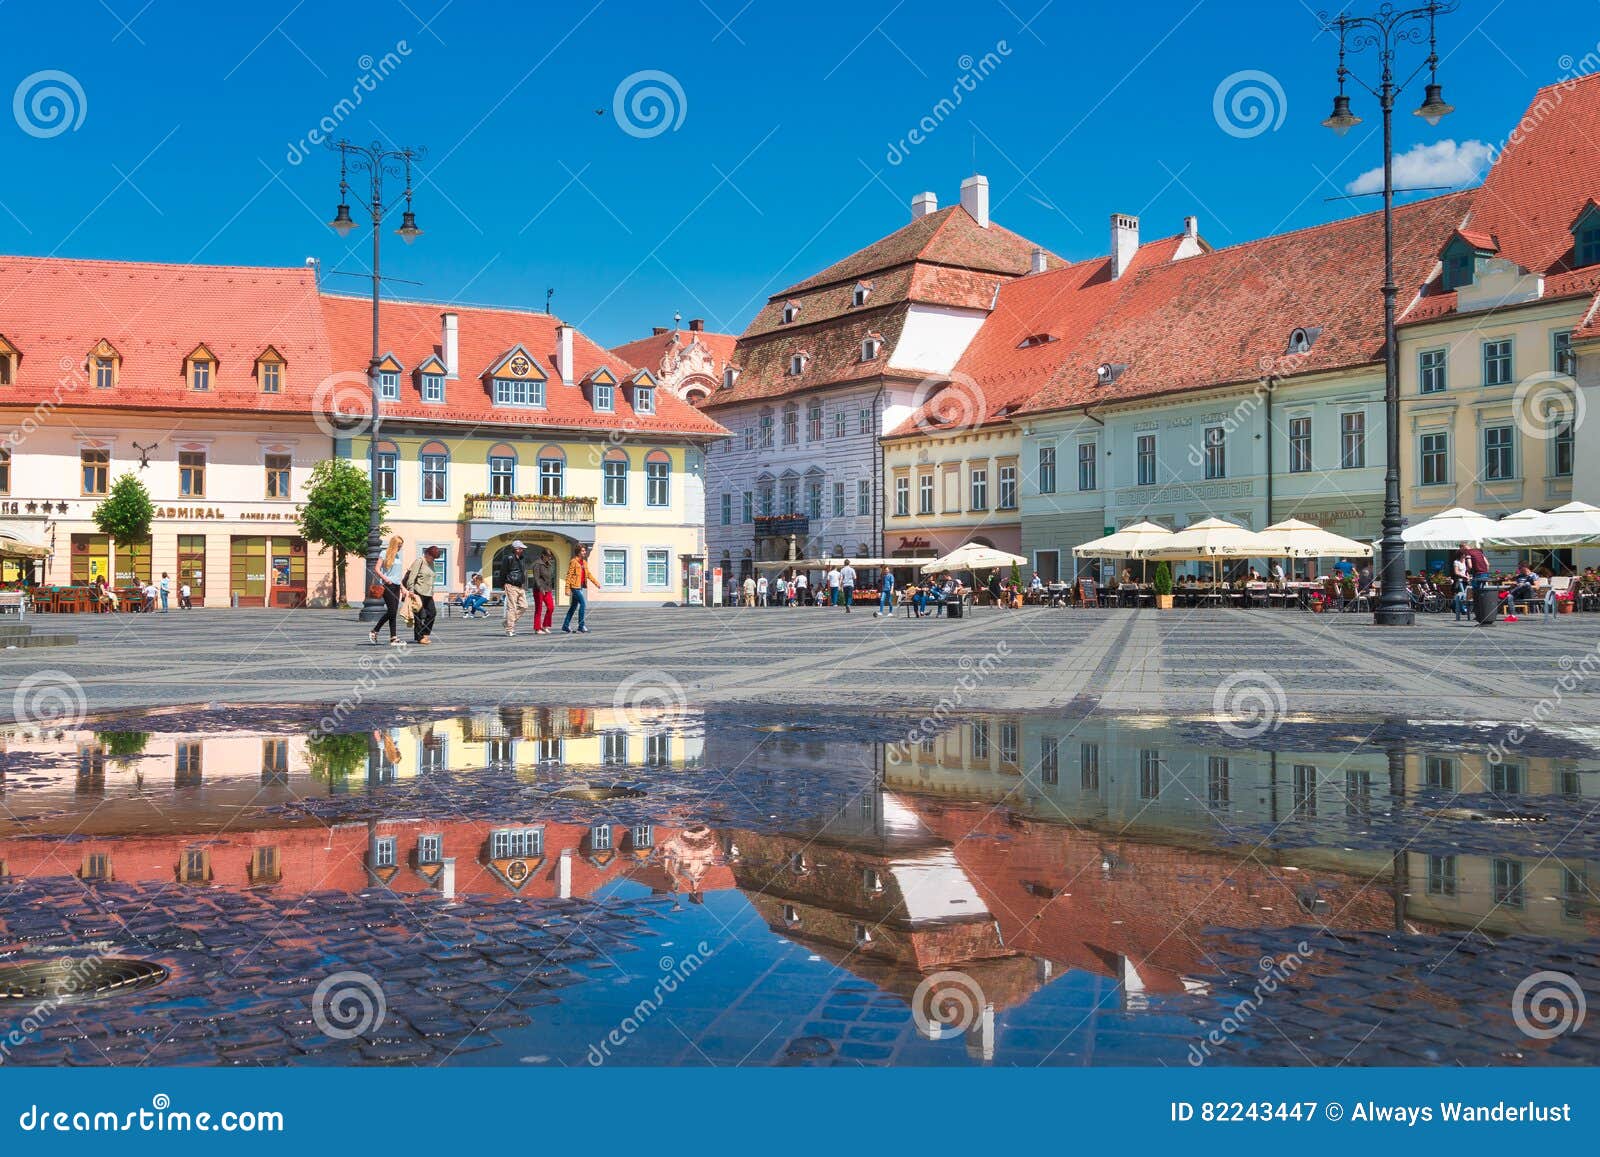 Sibiu / Hermannstadt – we travel